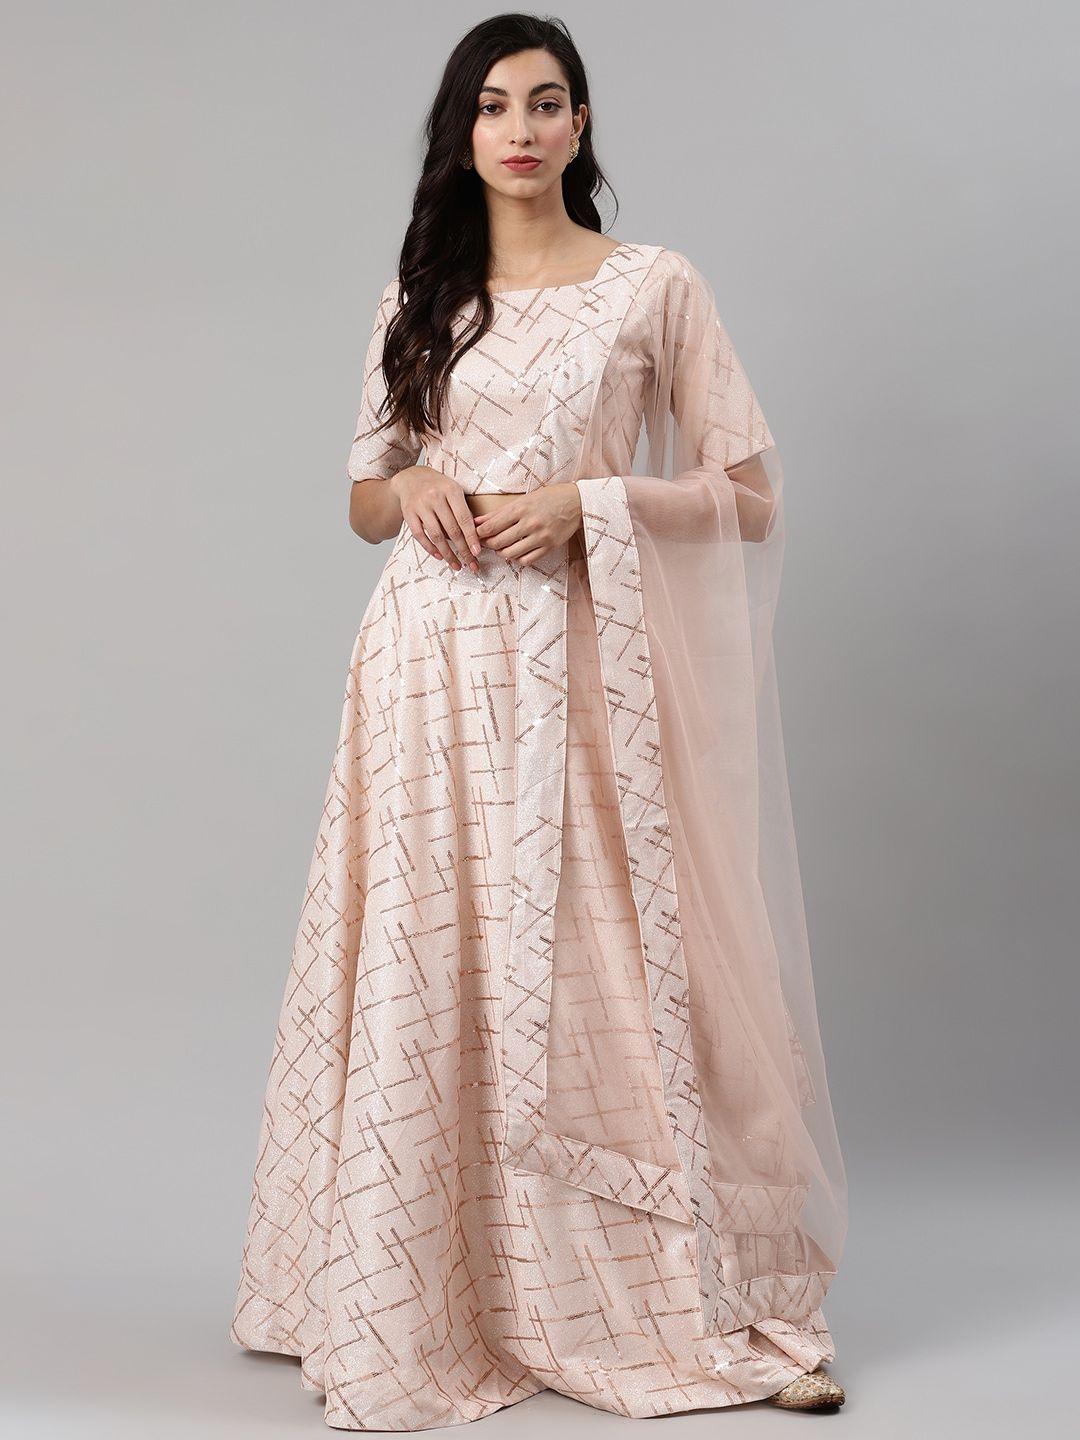 shubhkala embellished semi-stitched lehenga & unstitched blouse with dupatta